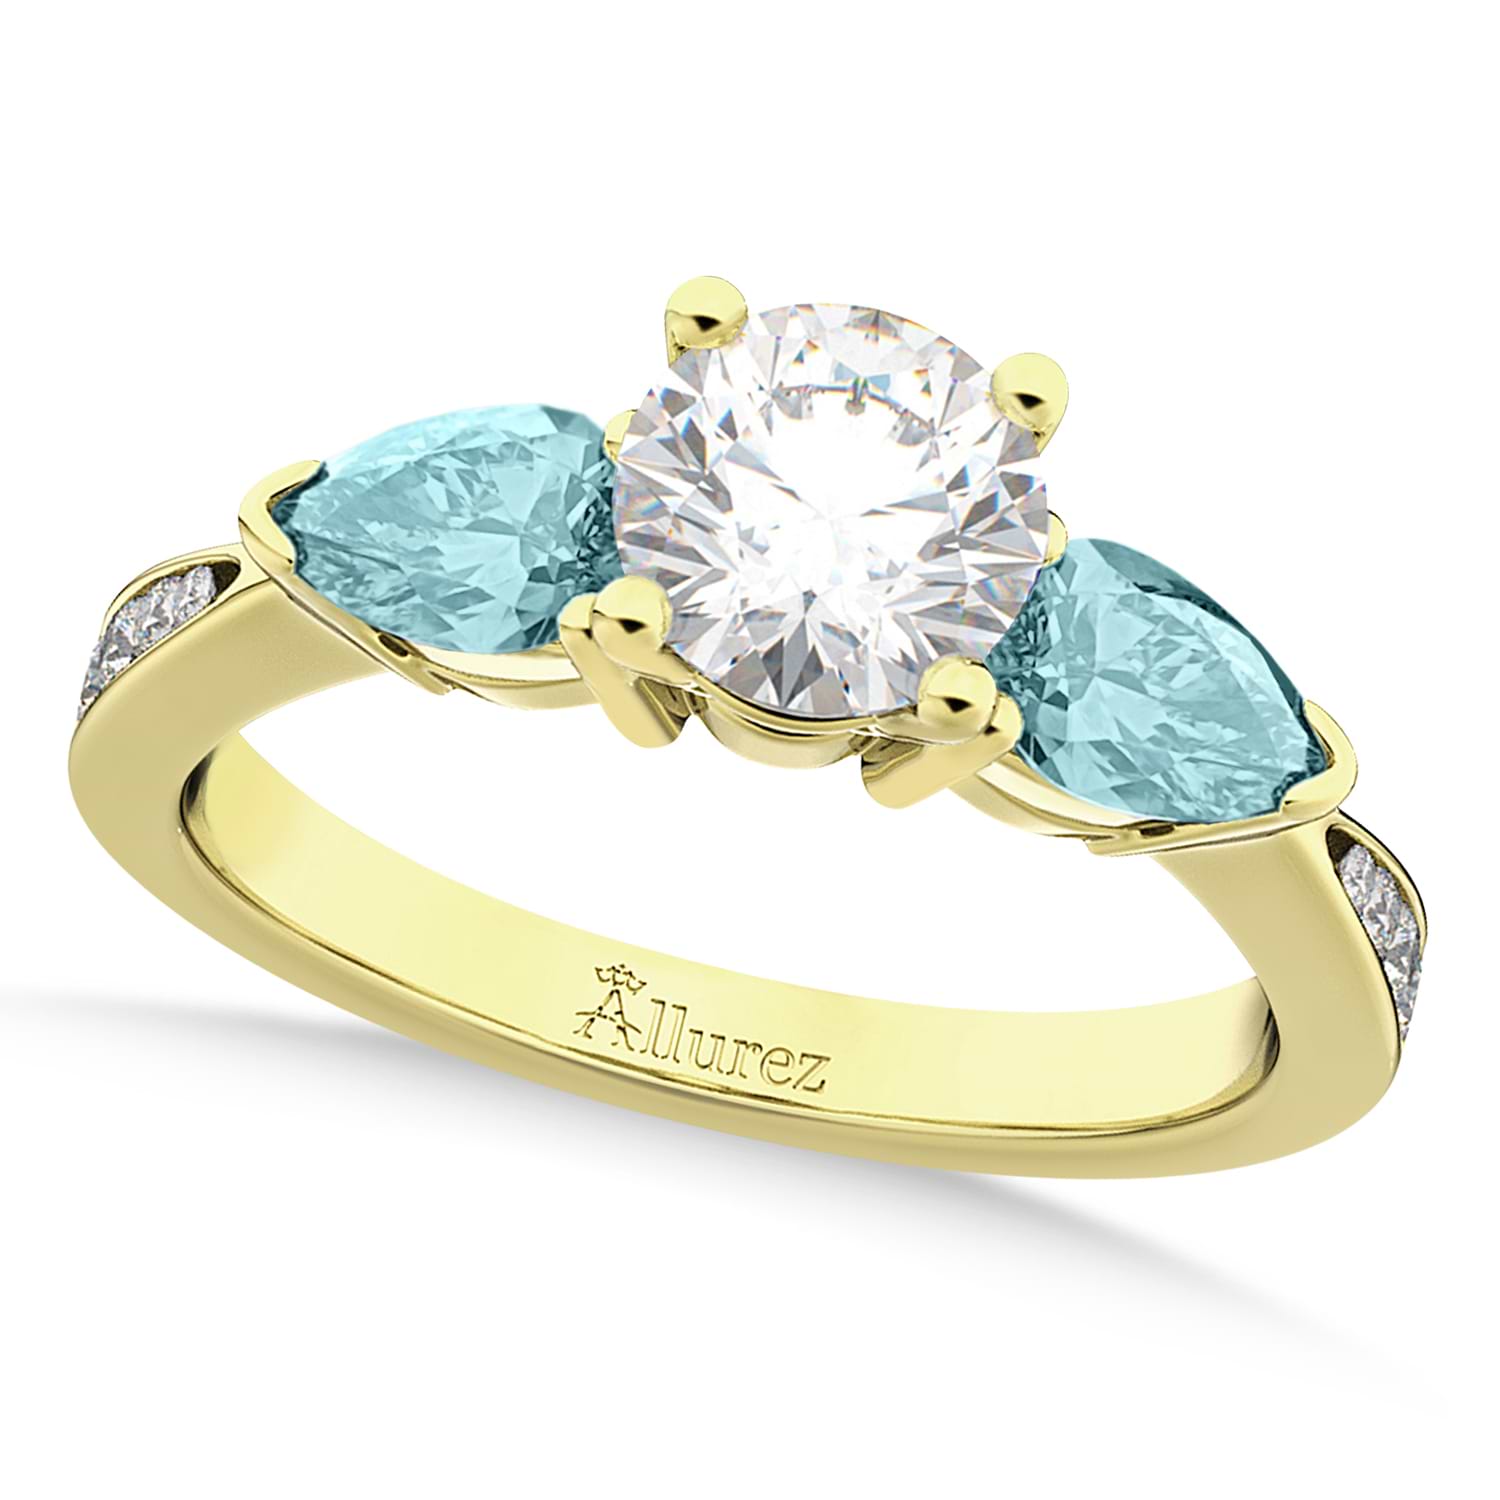 Round Diamond & Pear Aquamarine Engagement Ring 14k Yellow Gold (1.79ct)